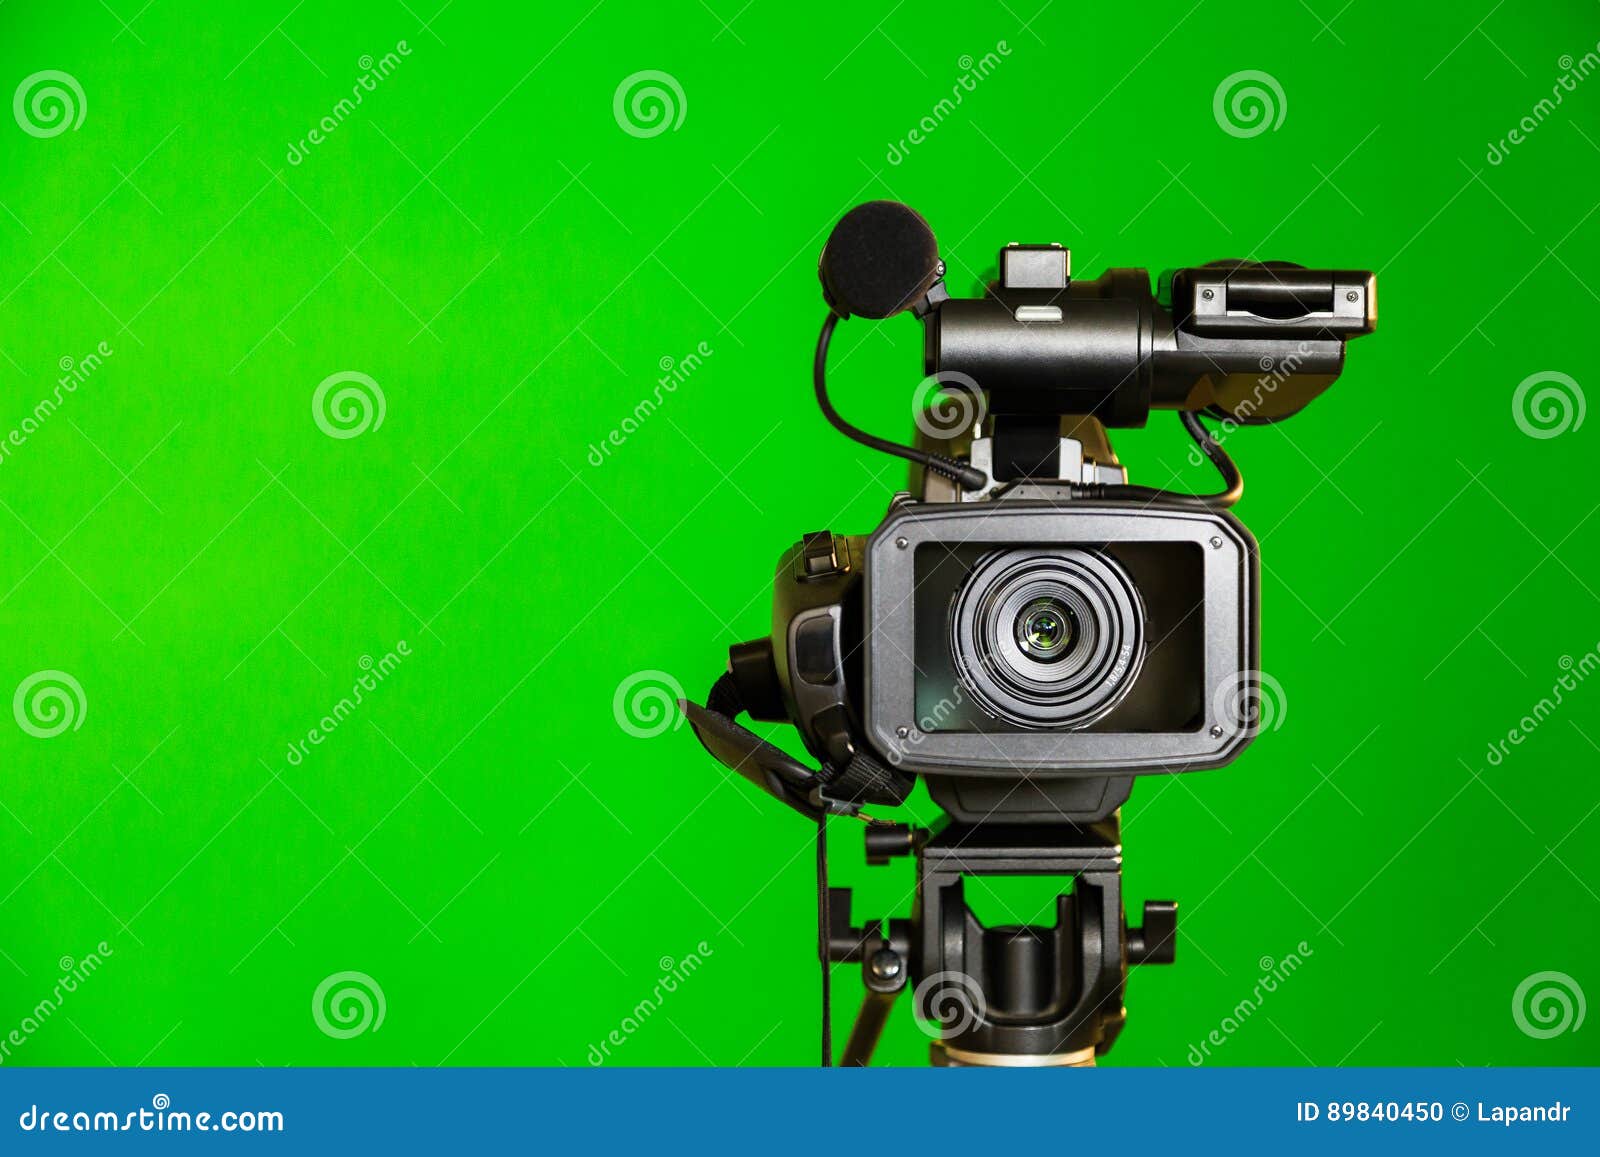 Зеленый экран камеры. Видеокамера хромакей. Фотокамеры на зеленом фоне. Видеокамера зеленая. Видеокамера на зеленом фоне.